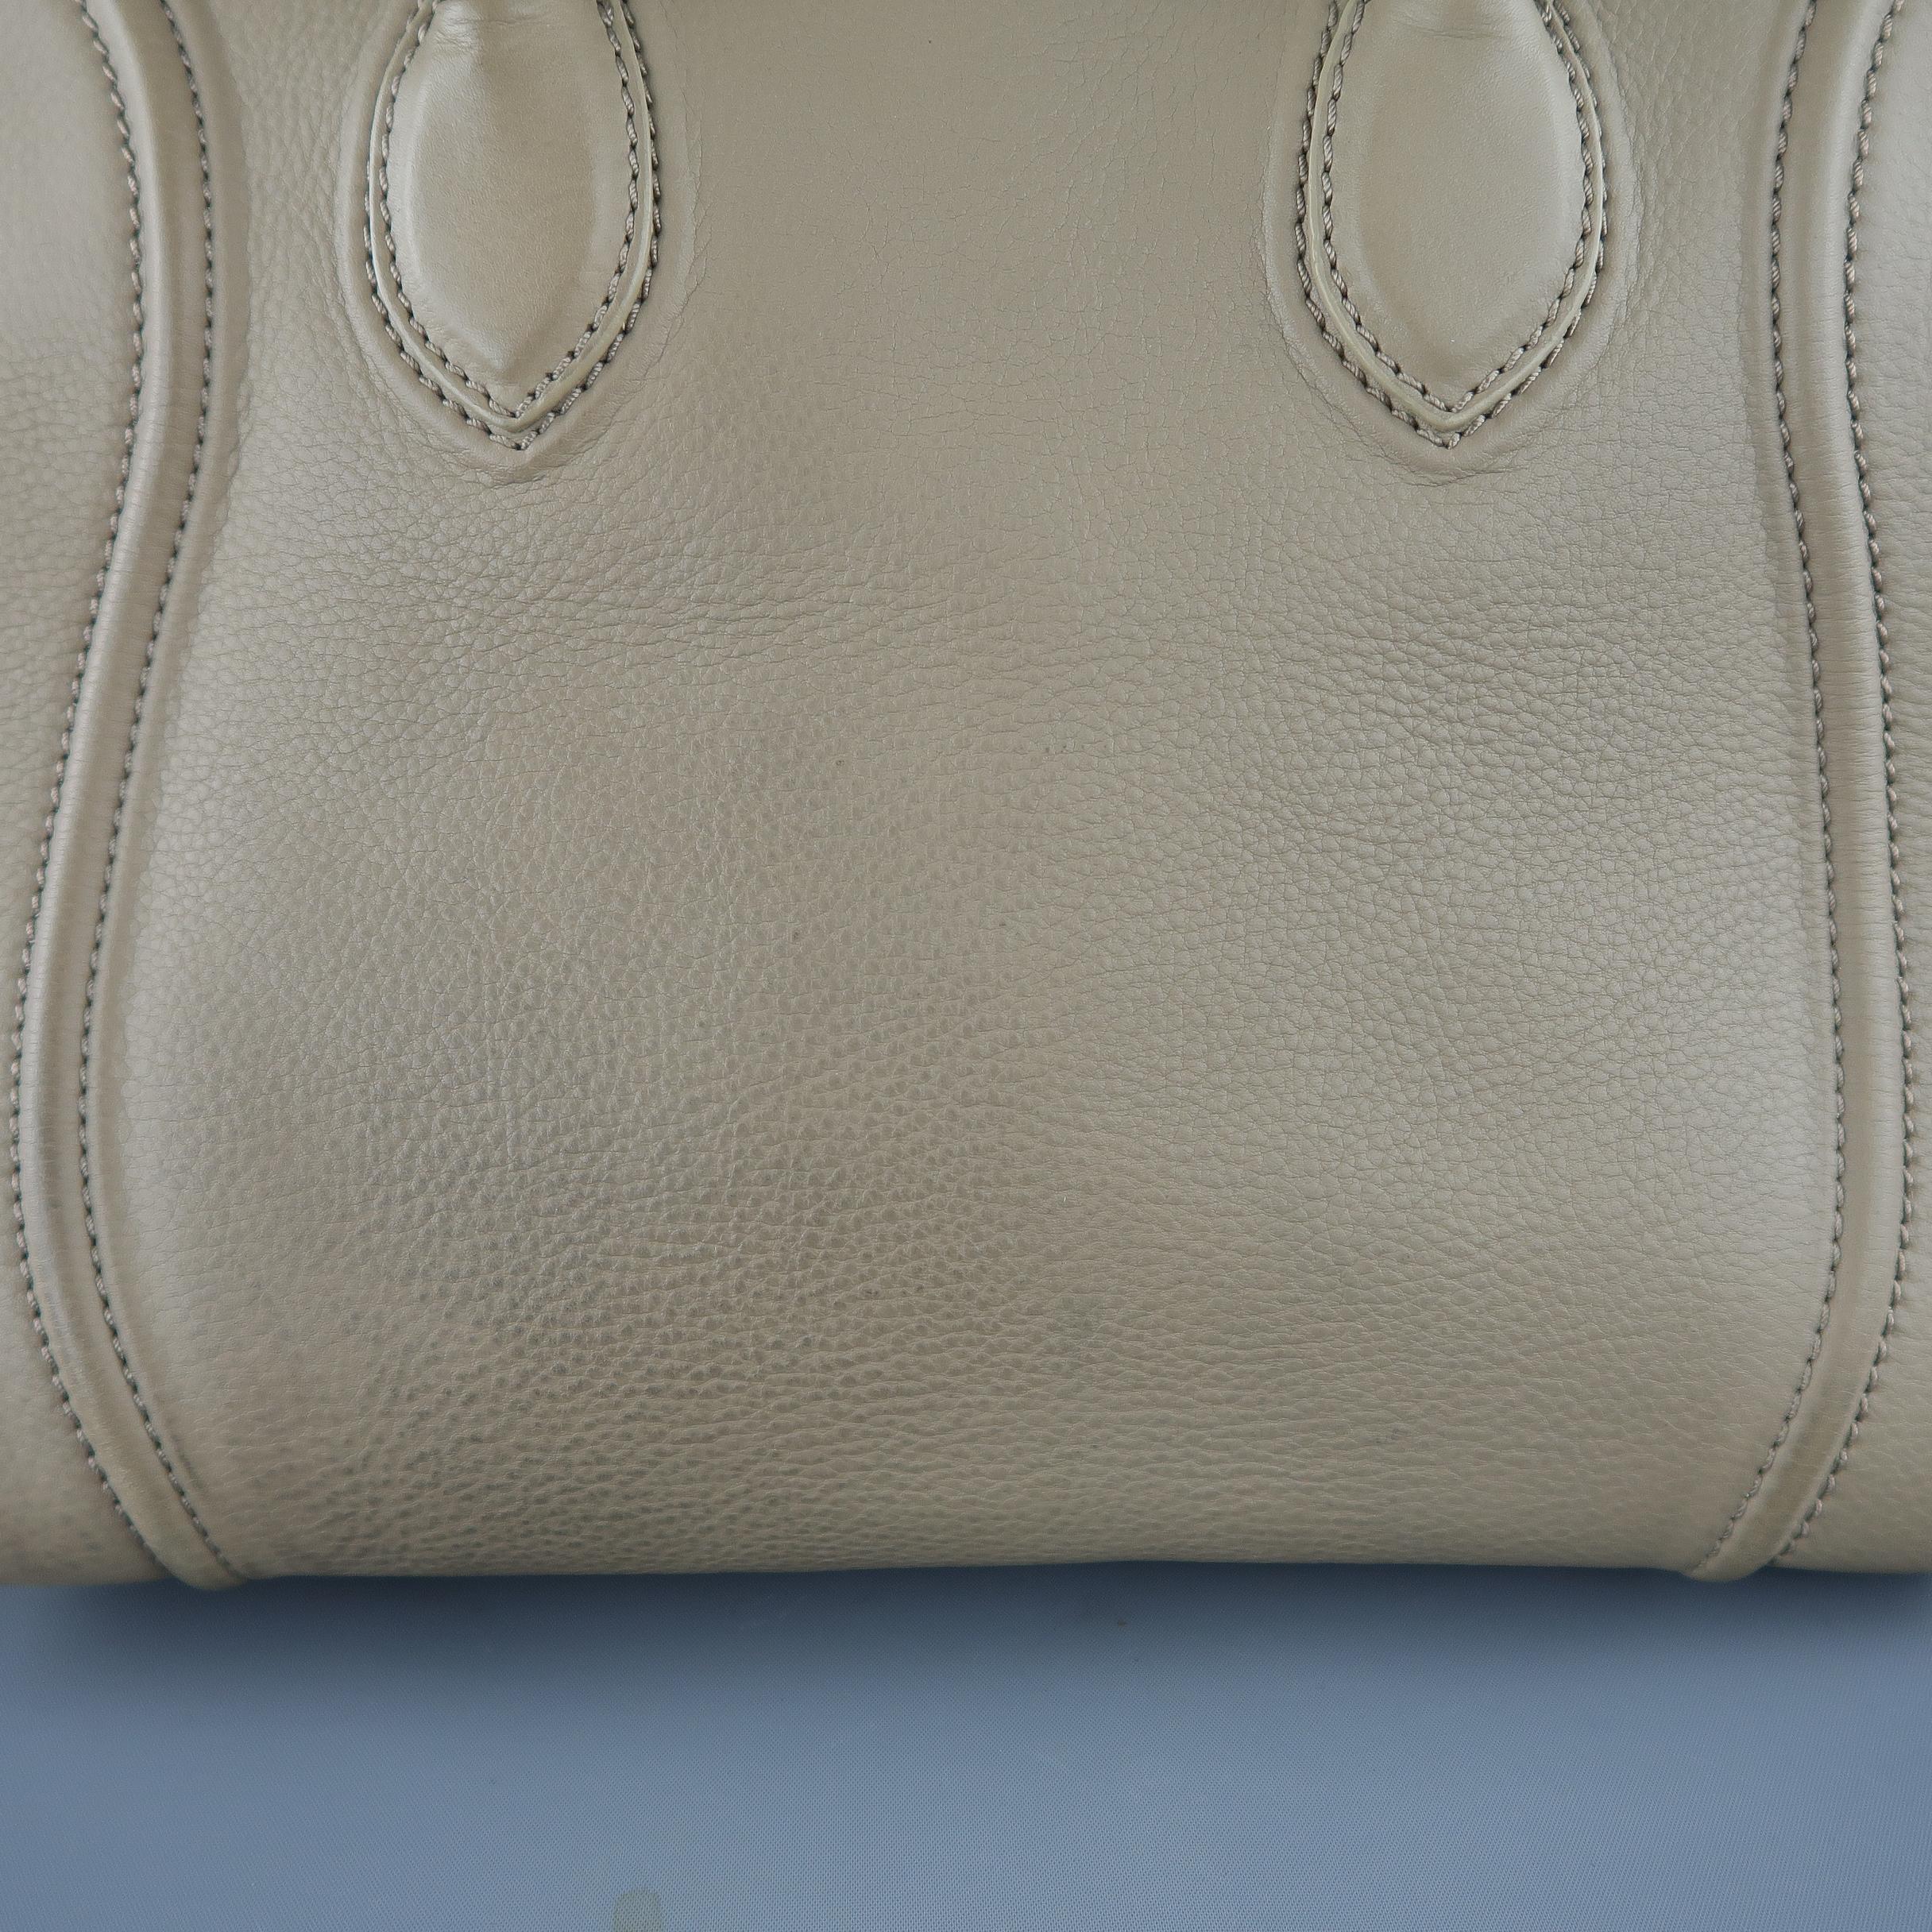 CELINE Taupe Pebble Grain Leather PHANTOM Medium Tote Handbag  4